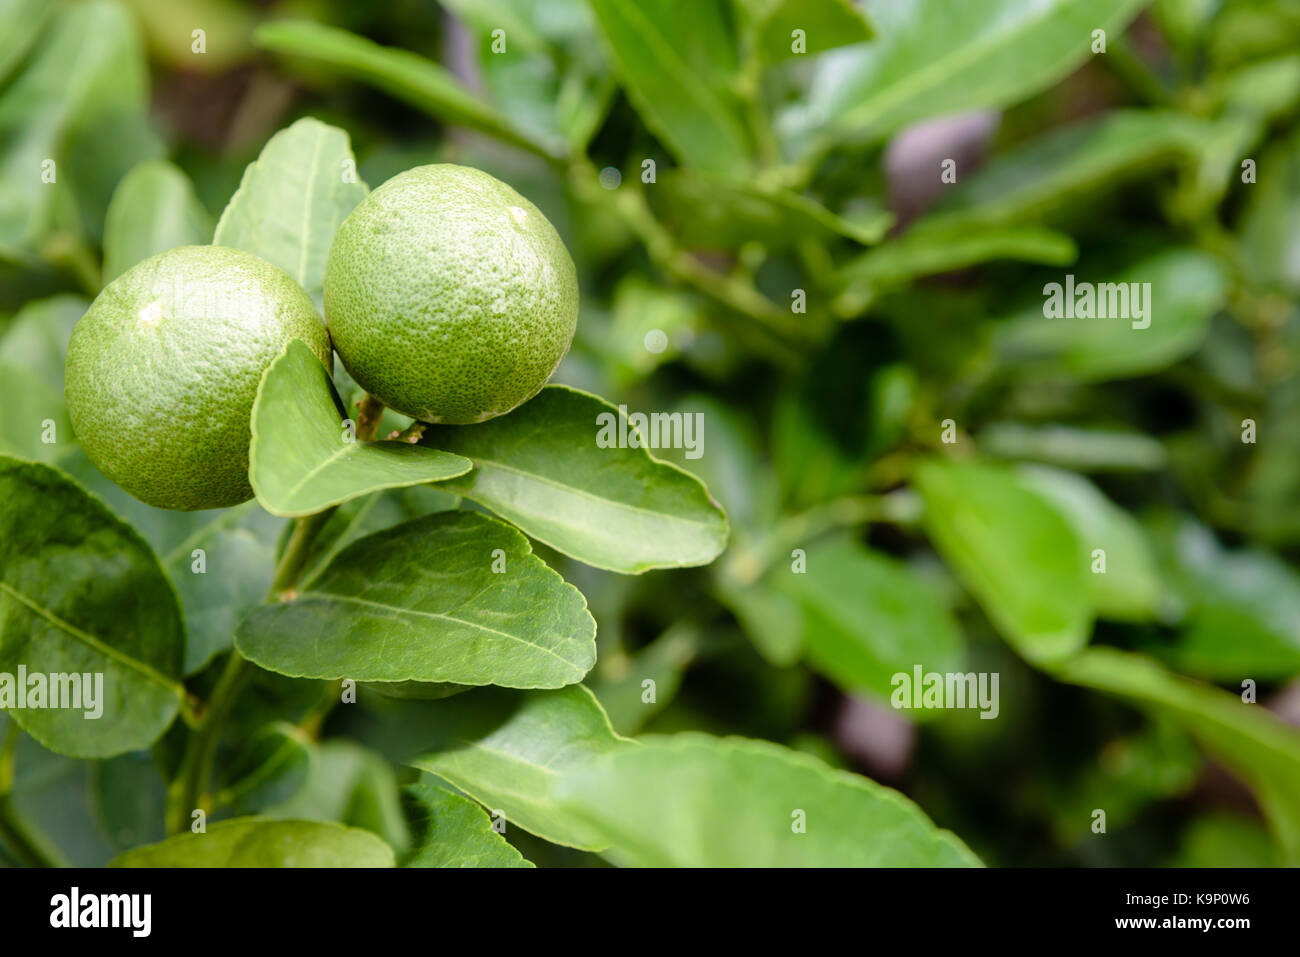 Zwei grüne Zitronen sind die landwirtschaftlichen Erzeugnisse auf seinem Baum in einem bepflanzten Garten mit grünem Laub als Hintergrund Stockfoto